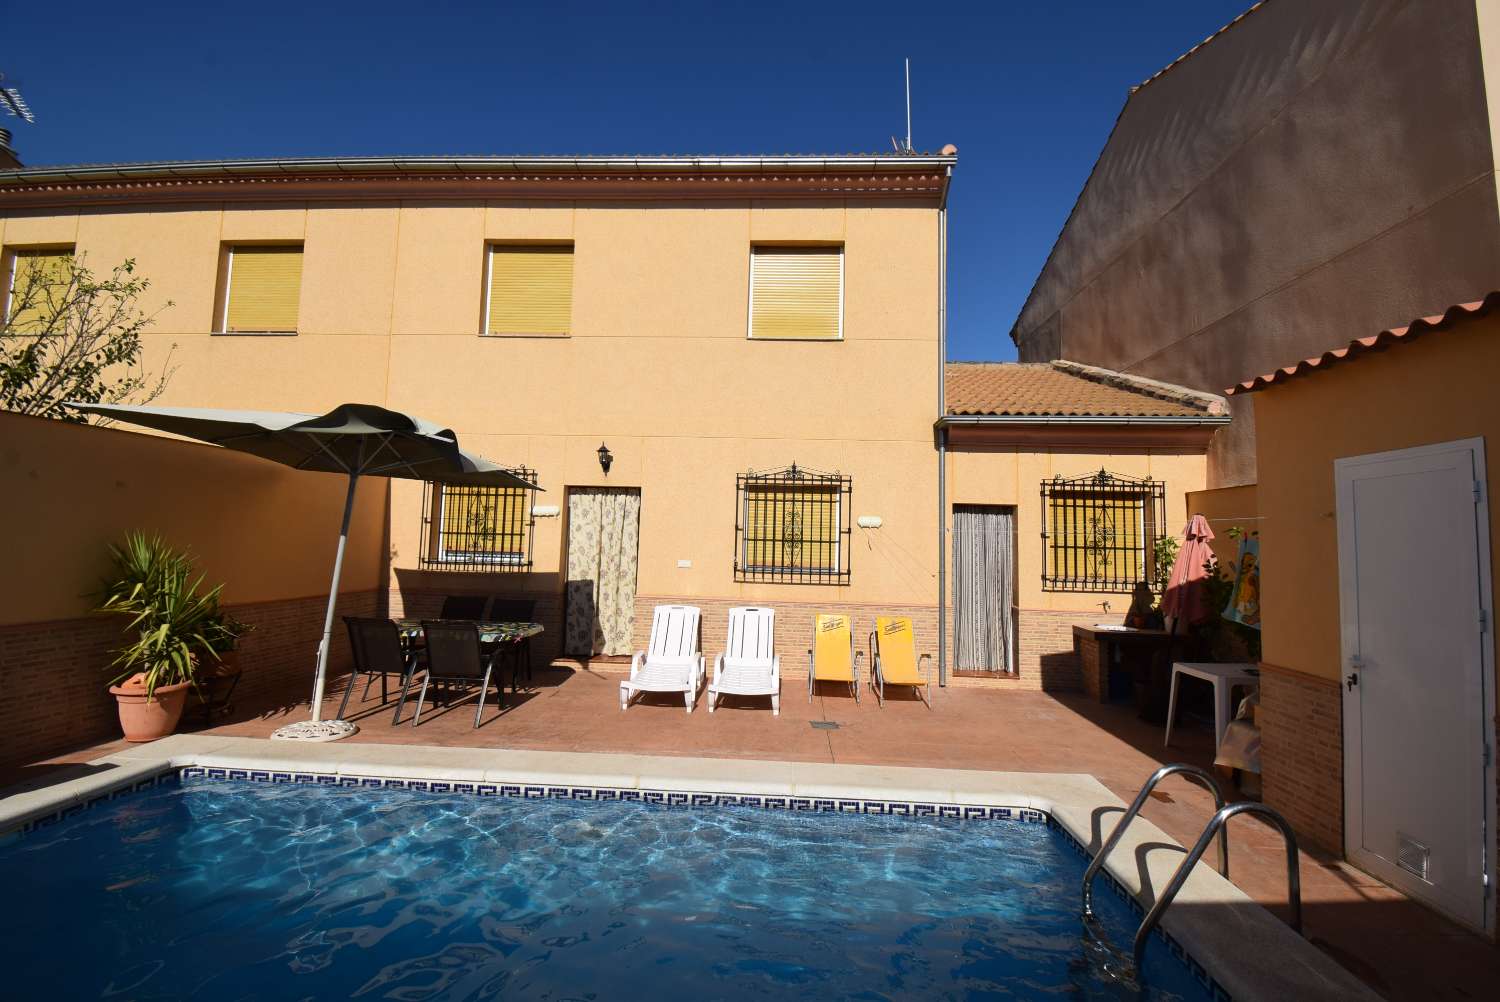 Grande residenza con patio soleggiato e piscina privata